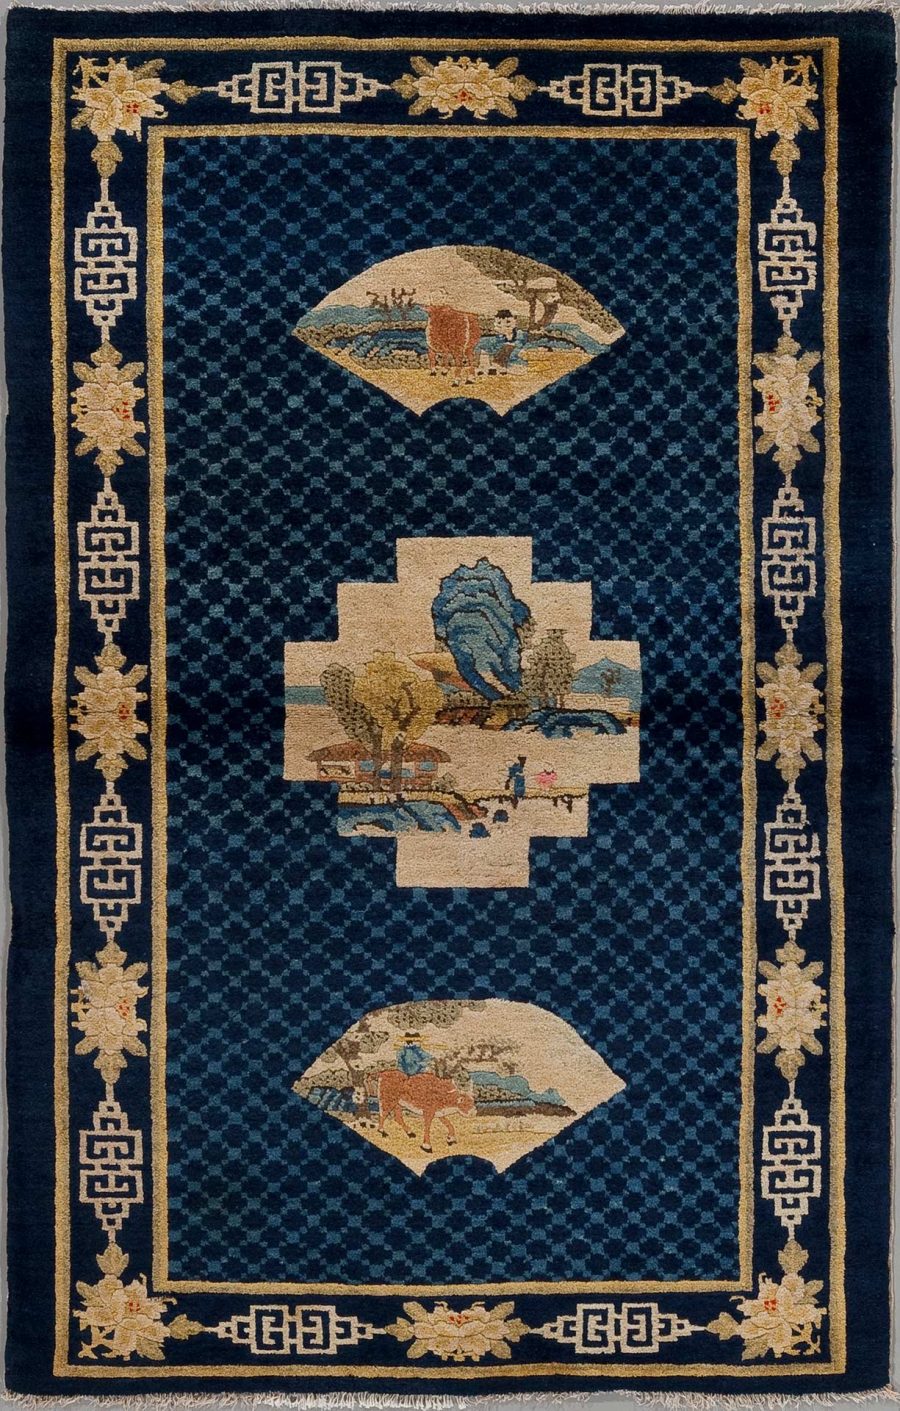 Orientteppich mit dunkelblauem Grund und drei zentralen, beige umrandeten Motiven, darstellend ländliche Szenen mit Figuren und Tieren, umgeben von floralen Ornamenten und geometrischen Mustern in Beige und Goldtönen auf dunkelblauem Rand.